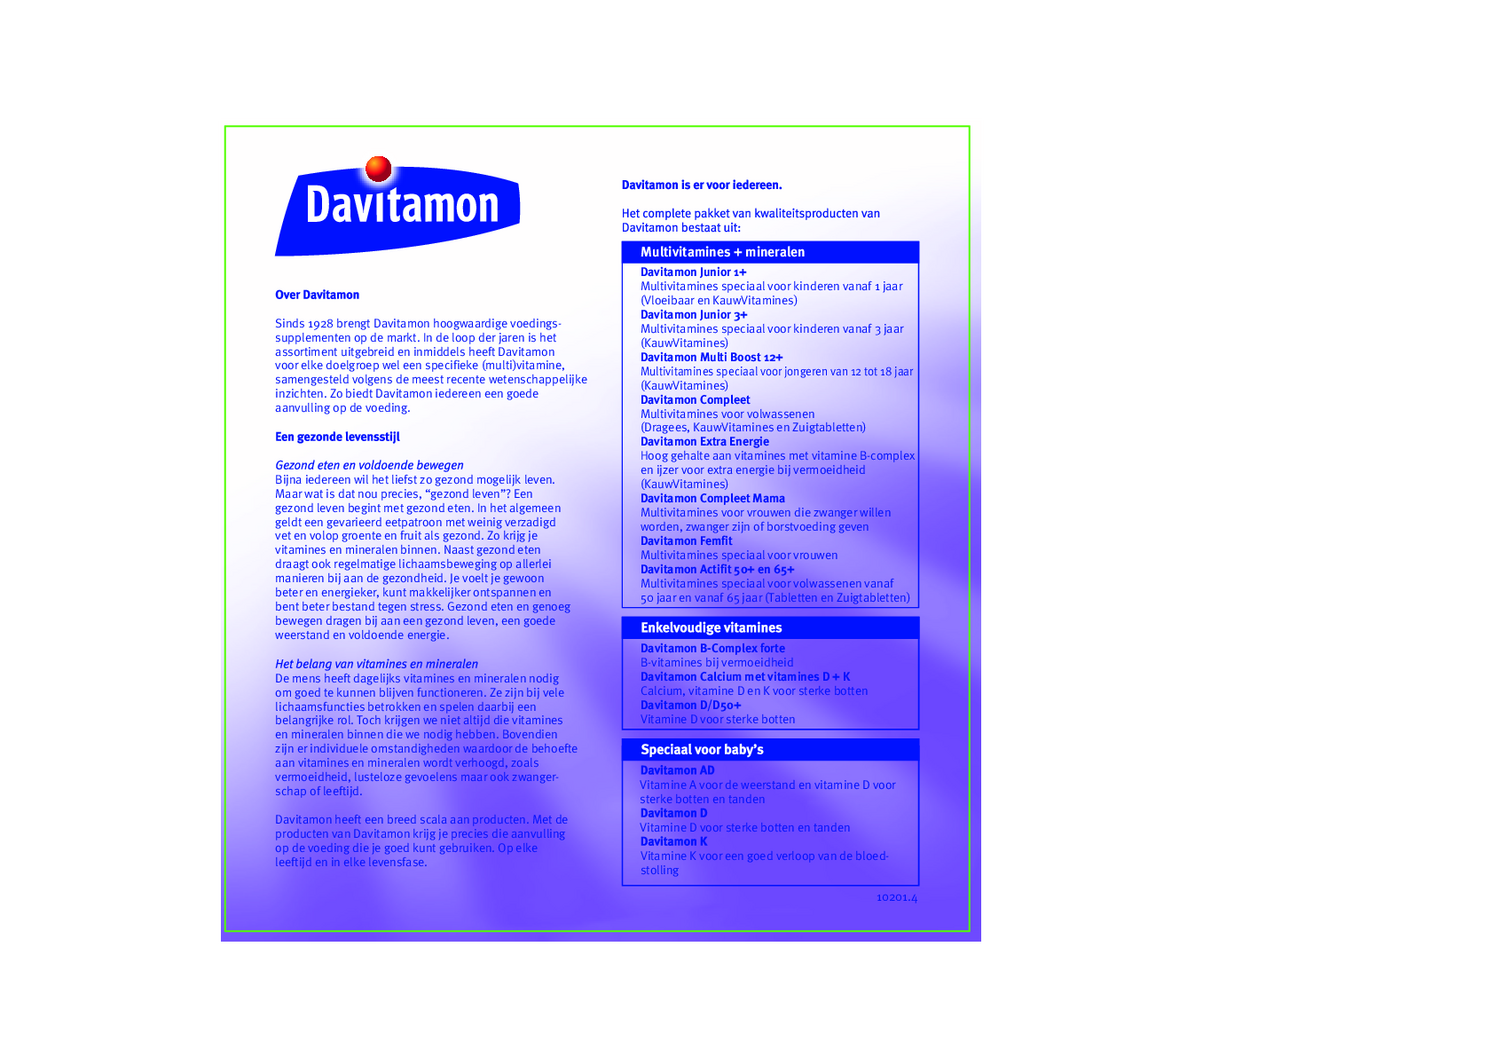 Vitamine D 50+ Tabletten afbeelding van document #2, gebruiksaanwijzing